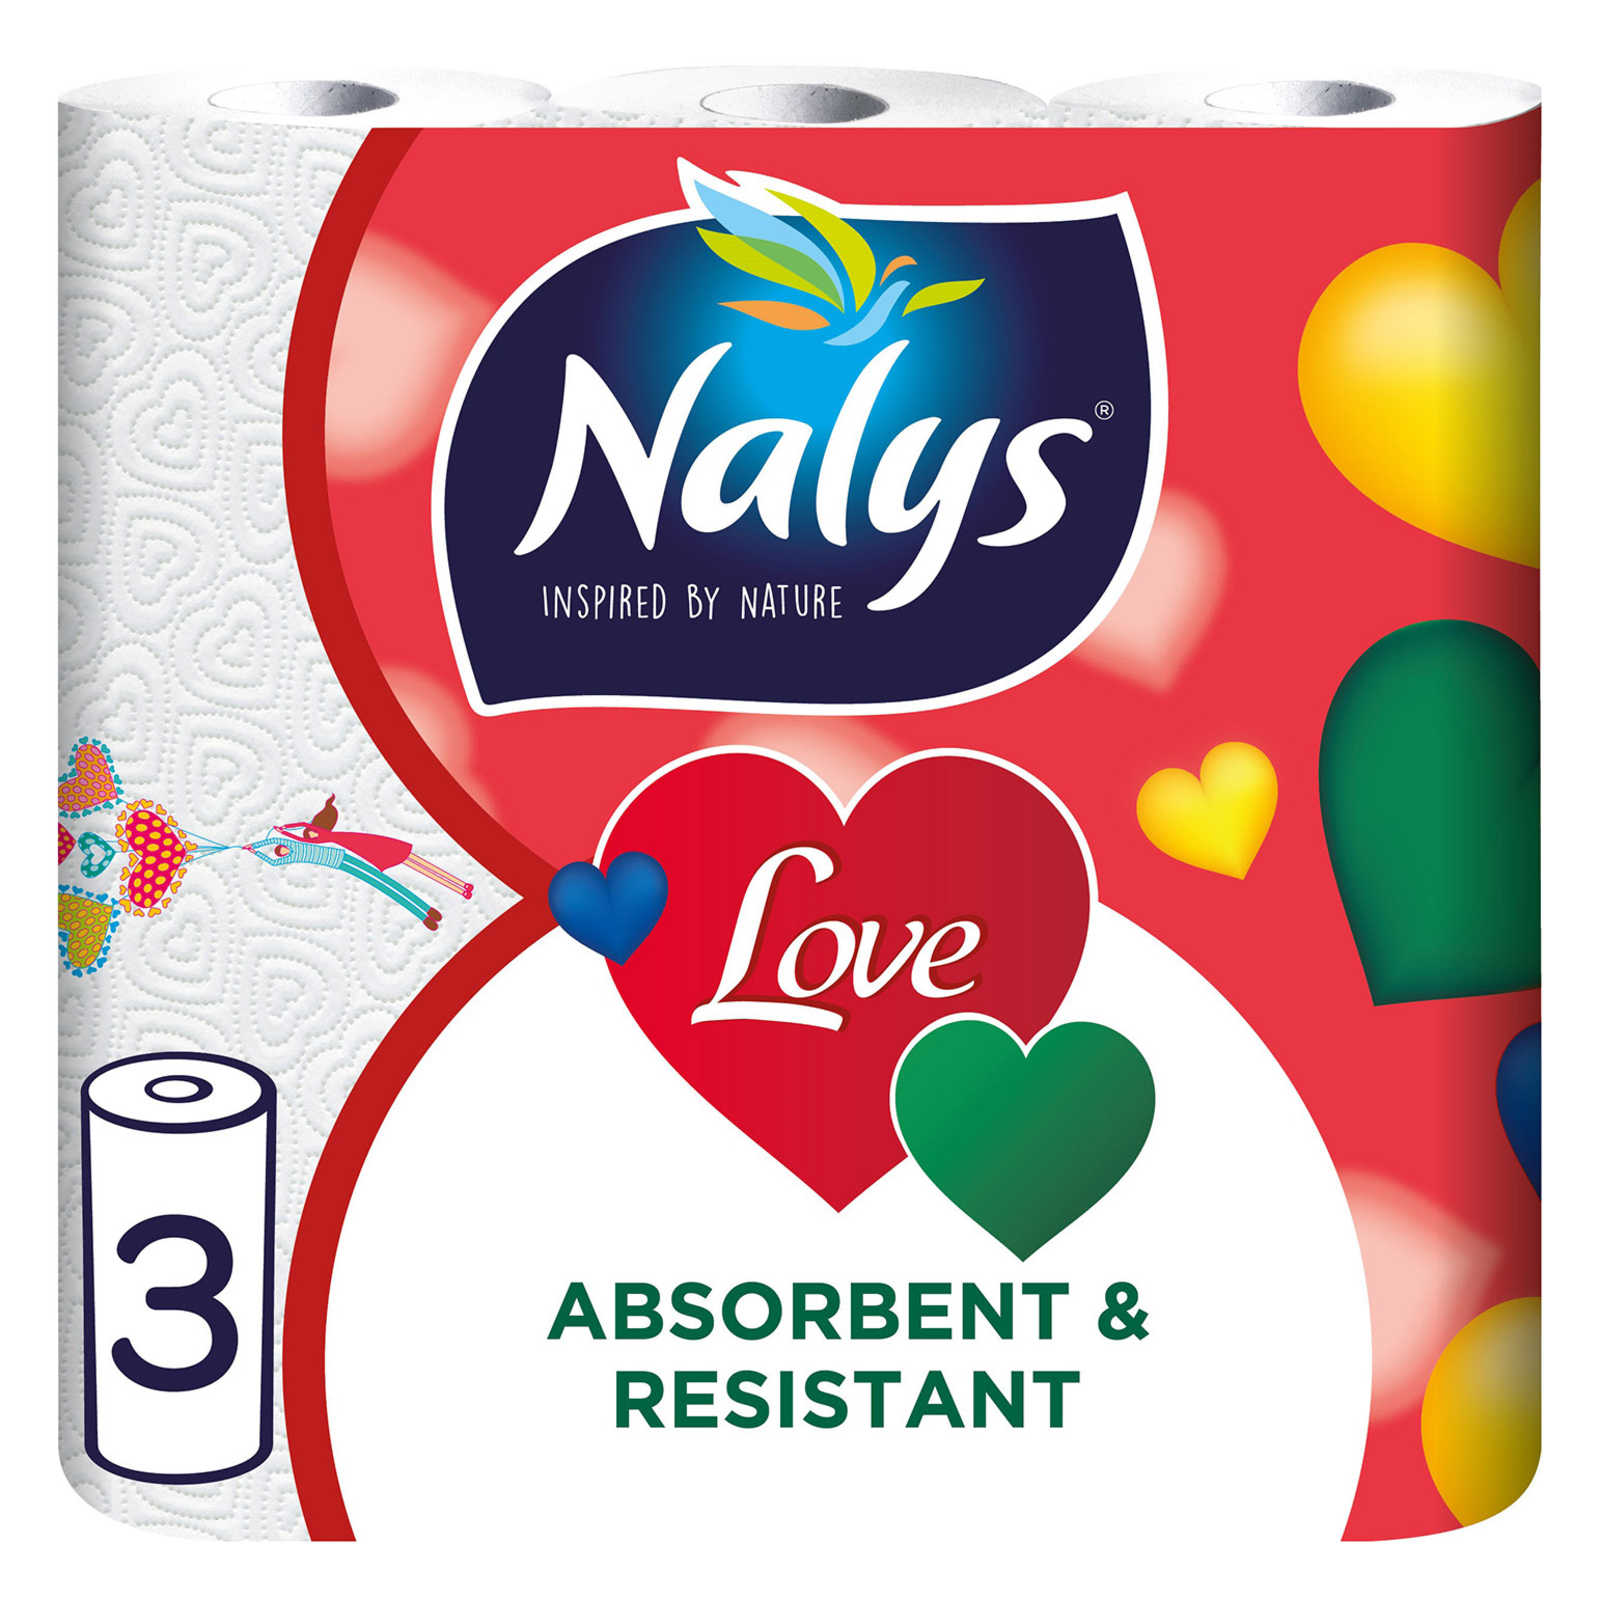 Nalys-Love